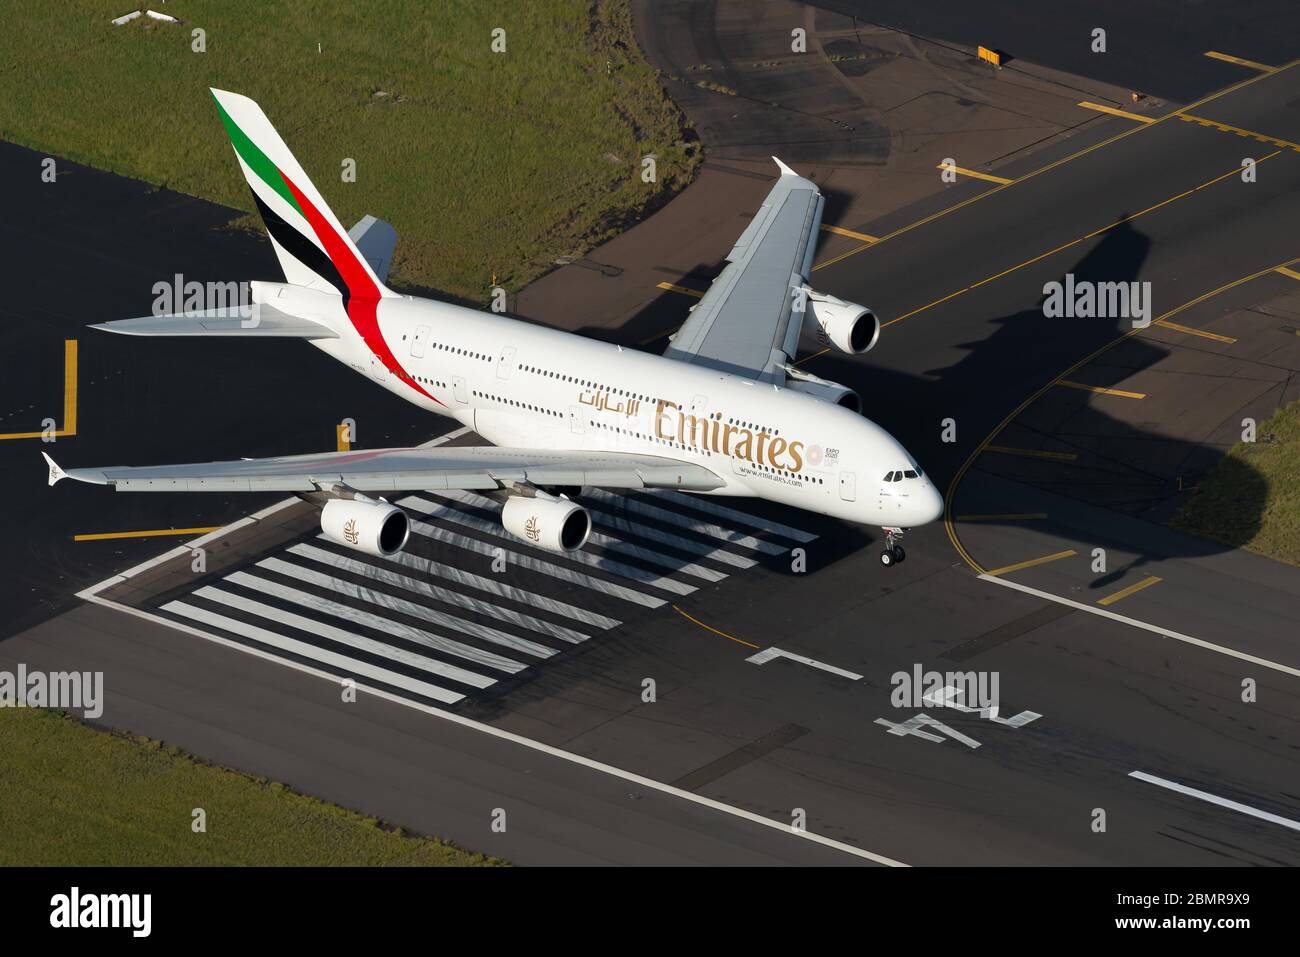 Emirates Airlines Airbus A380 aeromobili sopra la soglia della pista dell'aeroporto internazionale di Sydney prima dell'atterraggio. Vista aerea dell'enorme aereo A380. Foto Stock